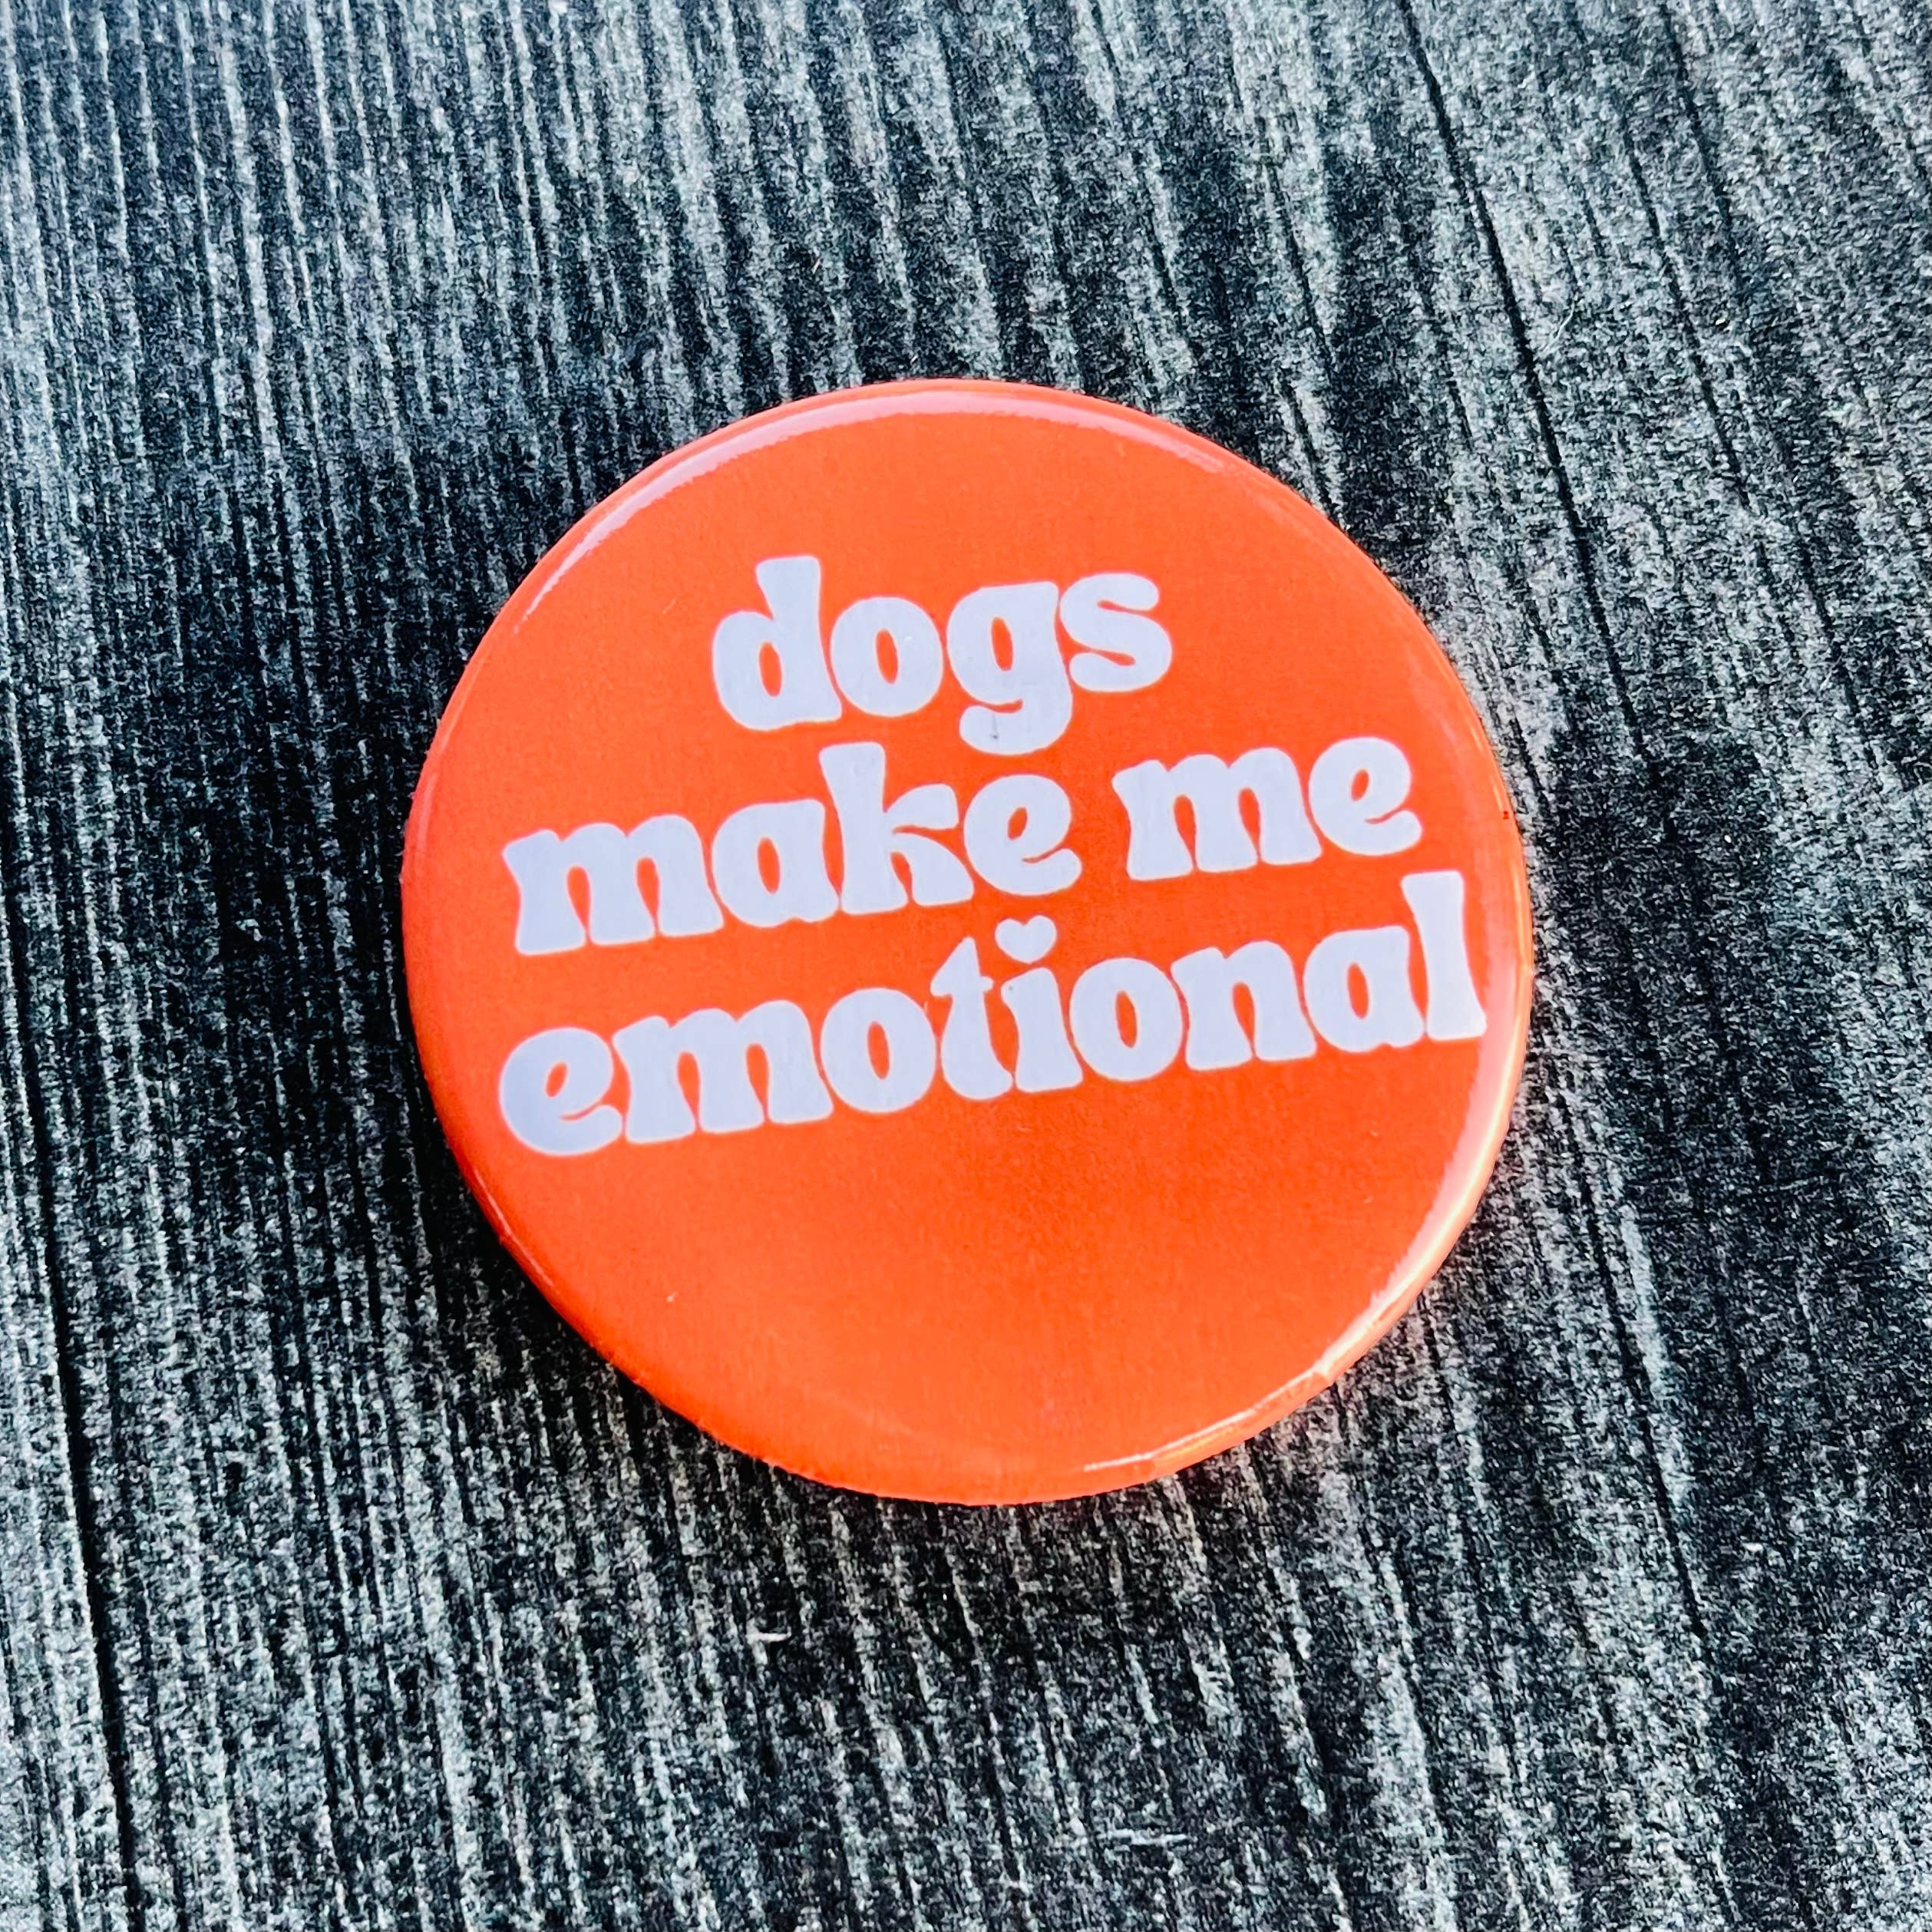 Dogs make me emotional pinback pin